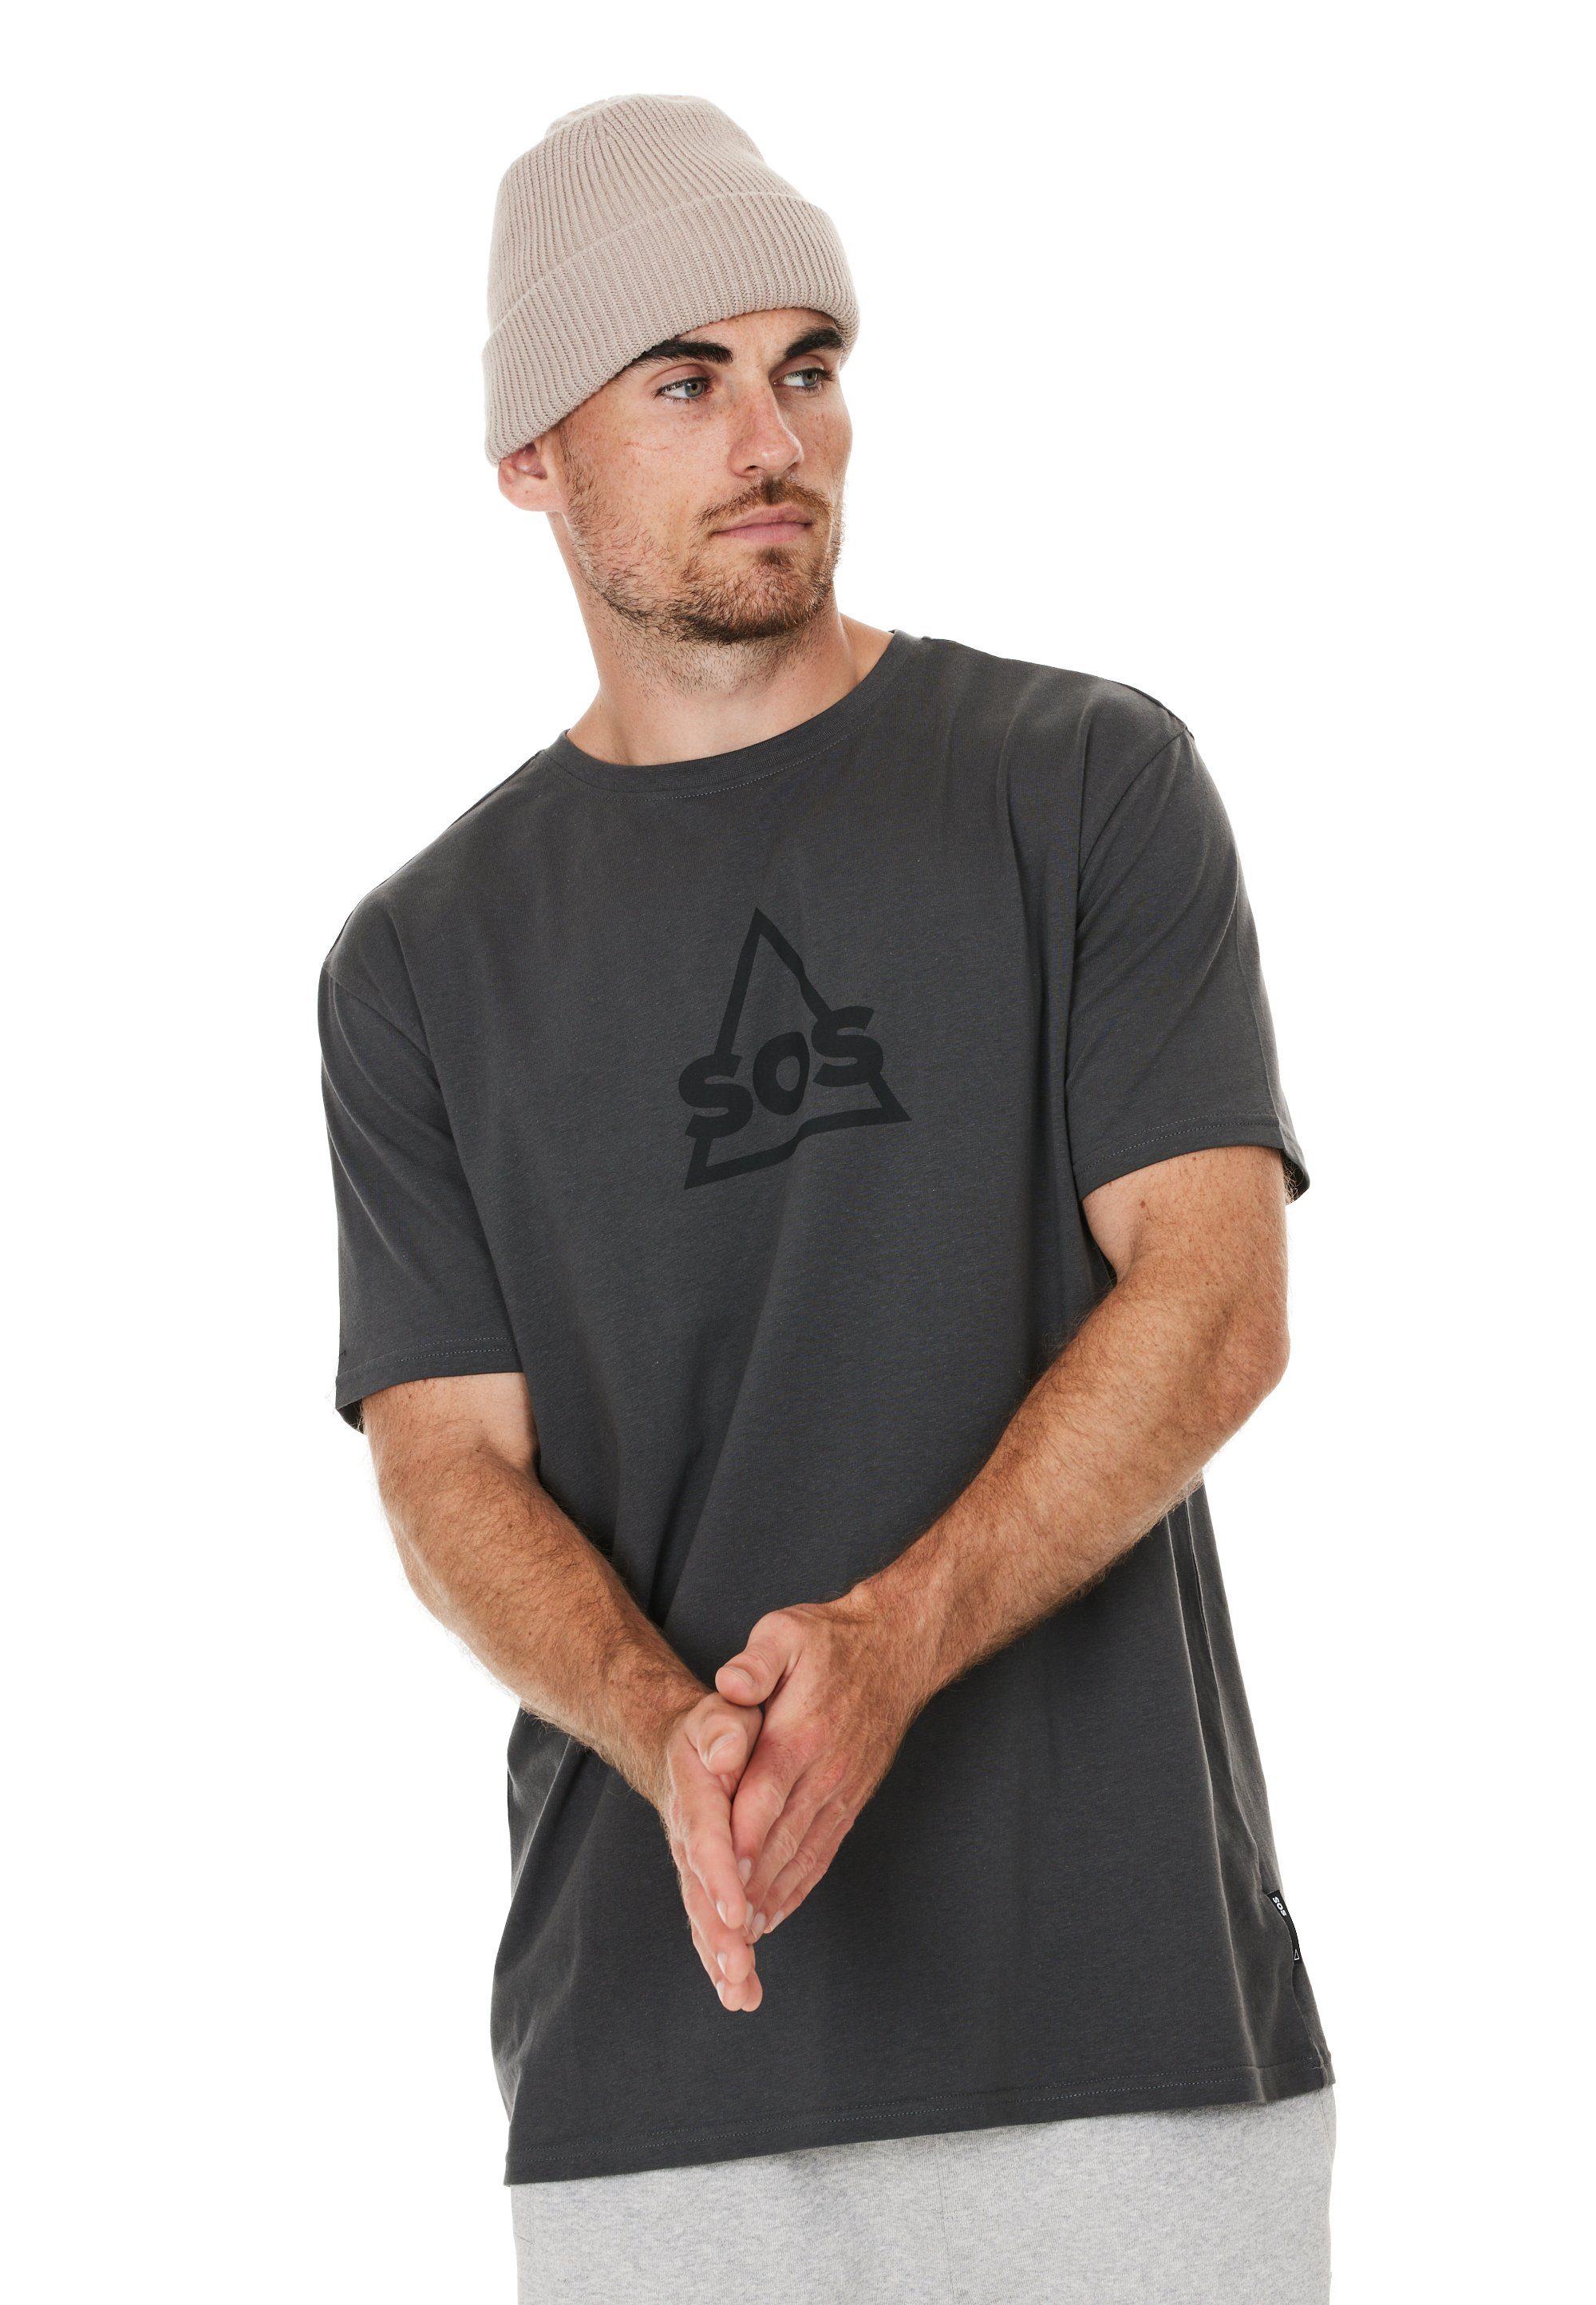 SOS T-Shirt Kvitfjell mit großem Markenlogo auf der Brust grau